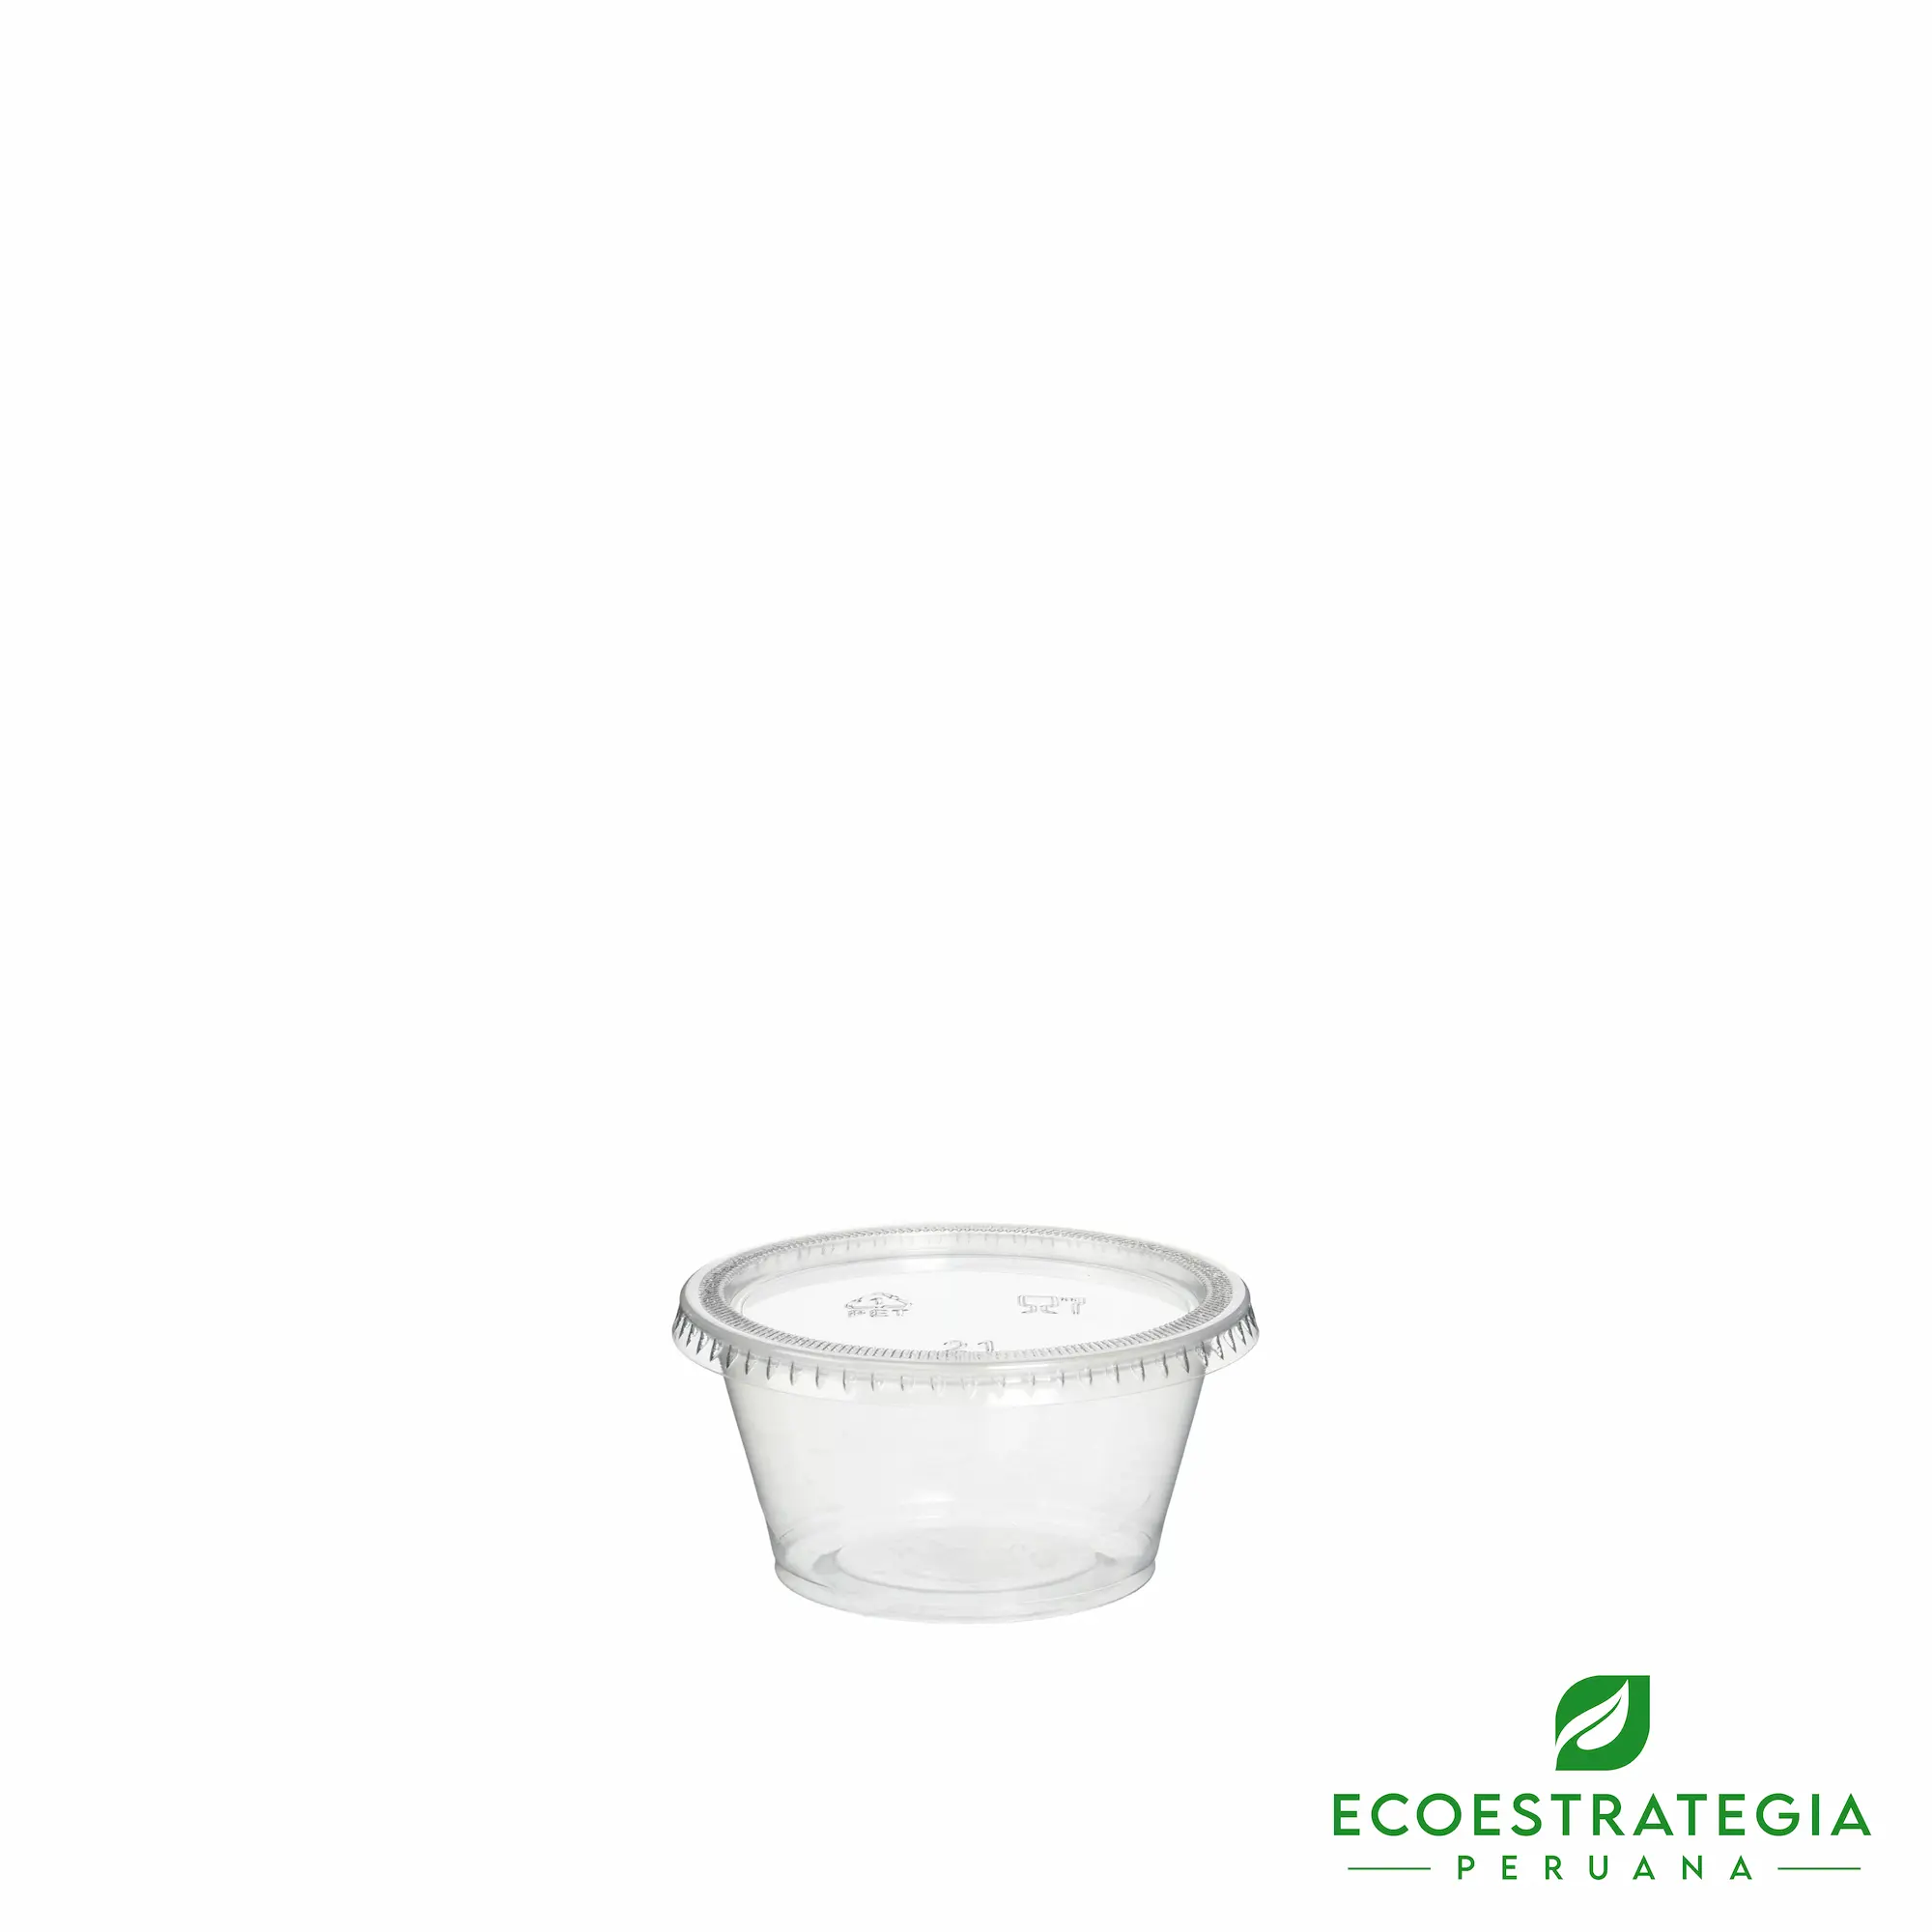 Este salsero de 2 oz es un producto de materiales descartables, hecho a base de pet virgen. Cotiza envases, empaques y pirotines biodegradables para comidas